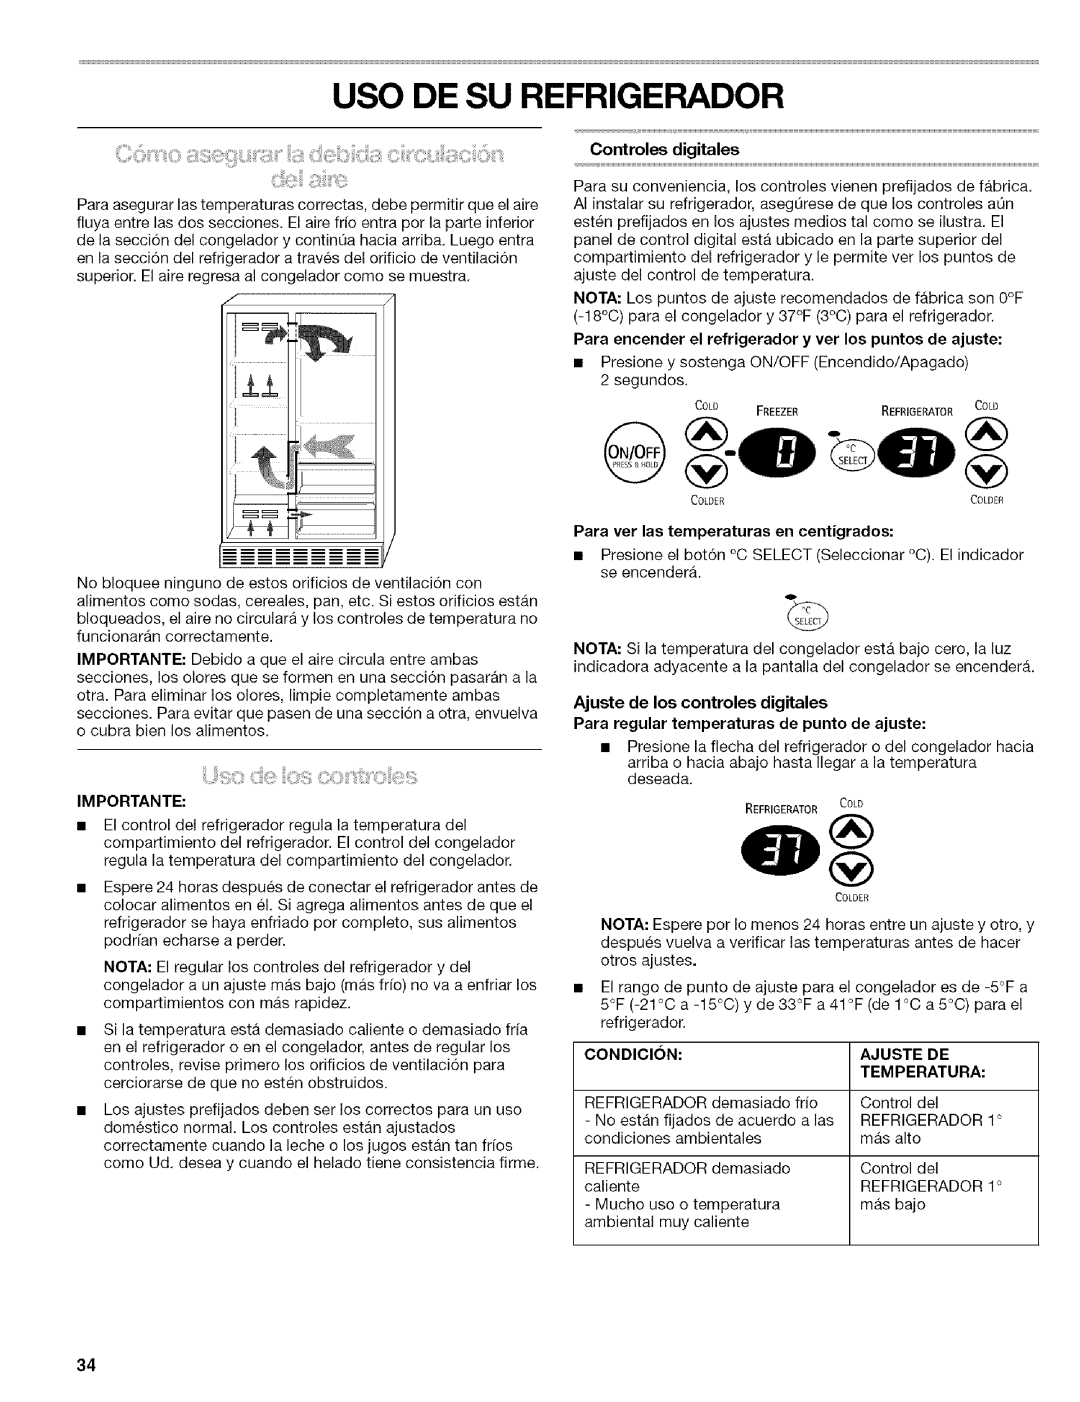 Kenmore 2305761A manual Uso De Su Refrigerador, Controles digitales, Importante, Para ver las temperaturas en centigrados 